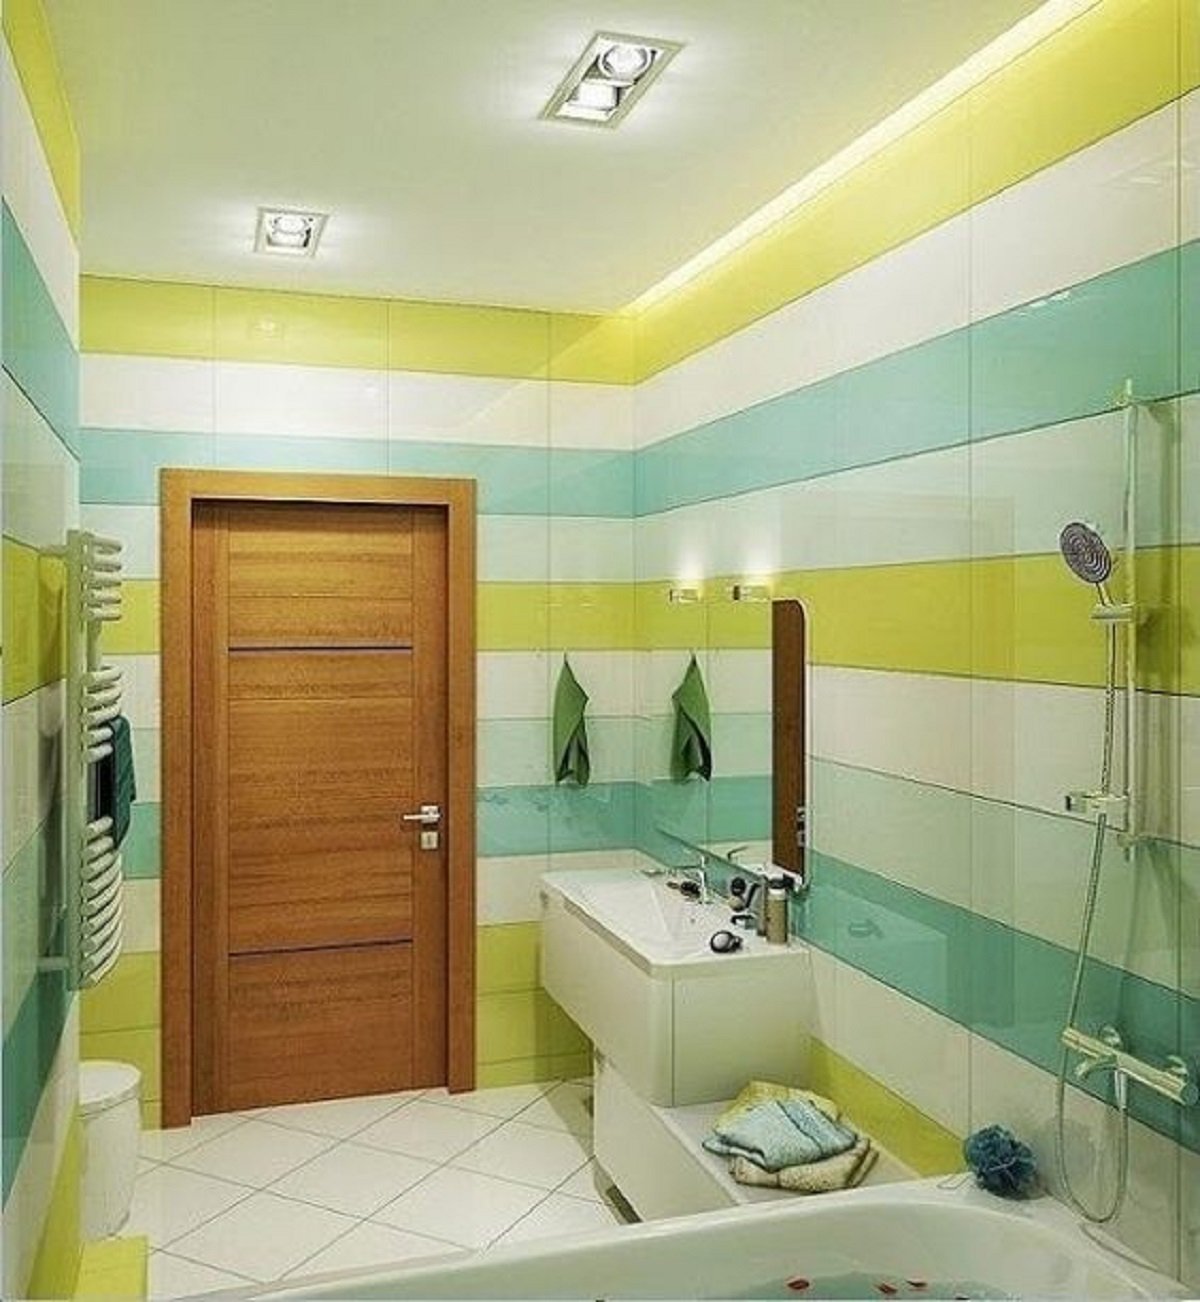 Двери в ванной комнате фото. Двери для ванной и туал. Дверь в ванную. Двери в ванную комнату и туалет. Ванная в зеленых тонах.